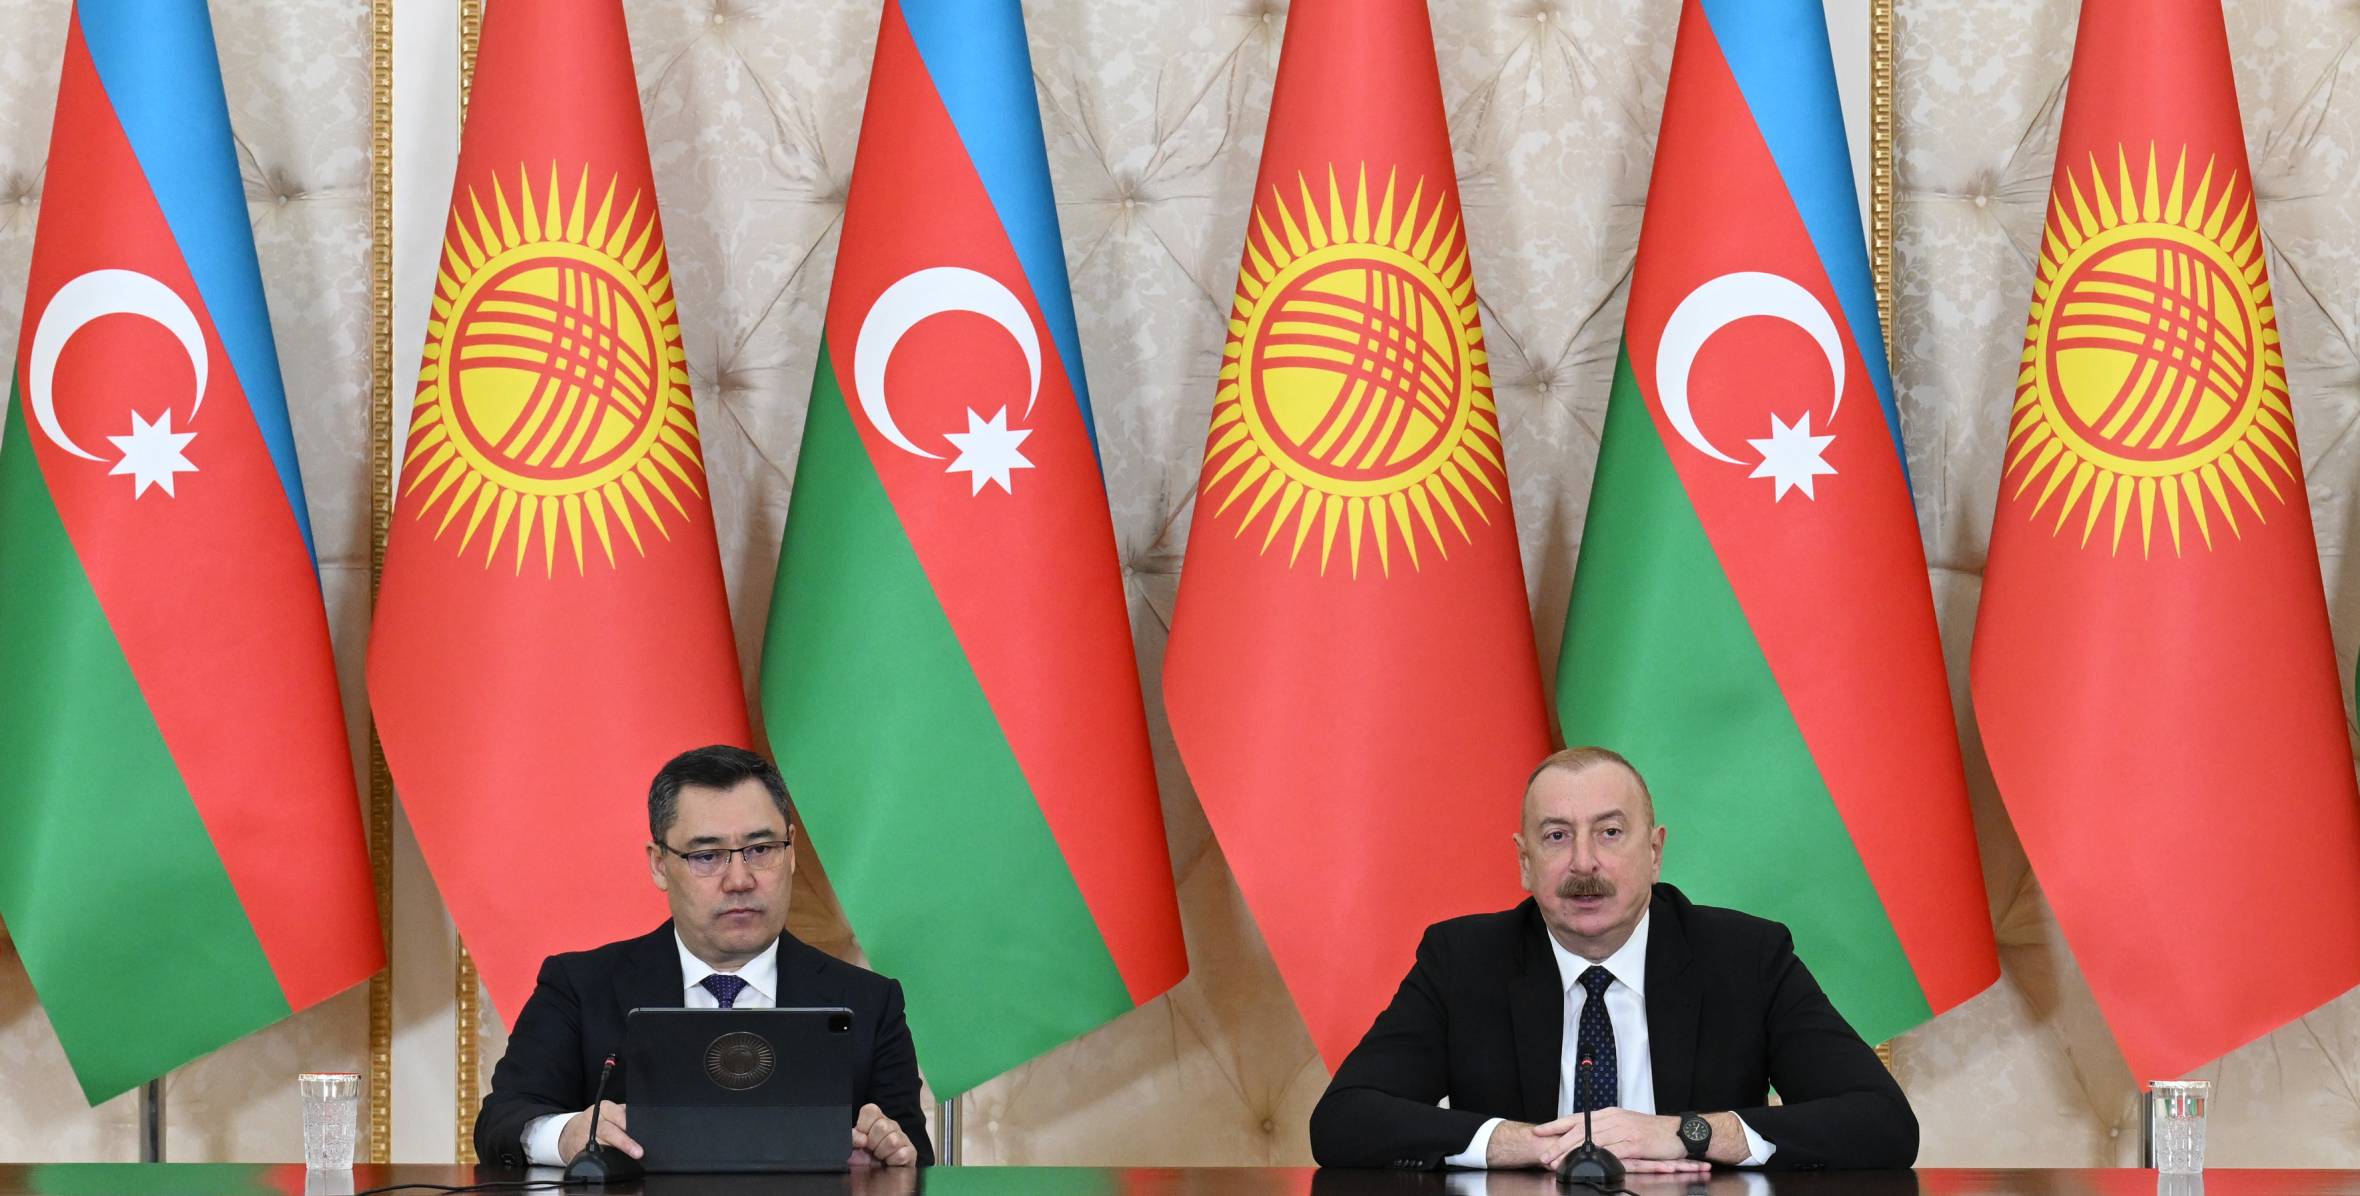 Президент Ильхам Алиев и Президент Садыр Жапаров выступили с заявлениями для прессы